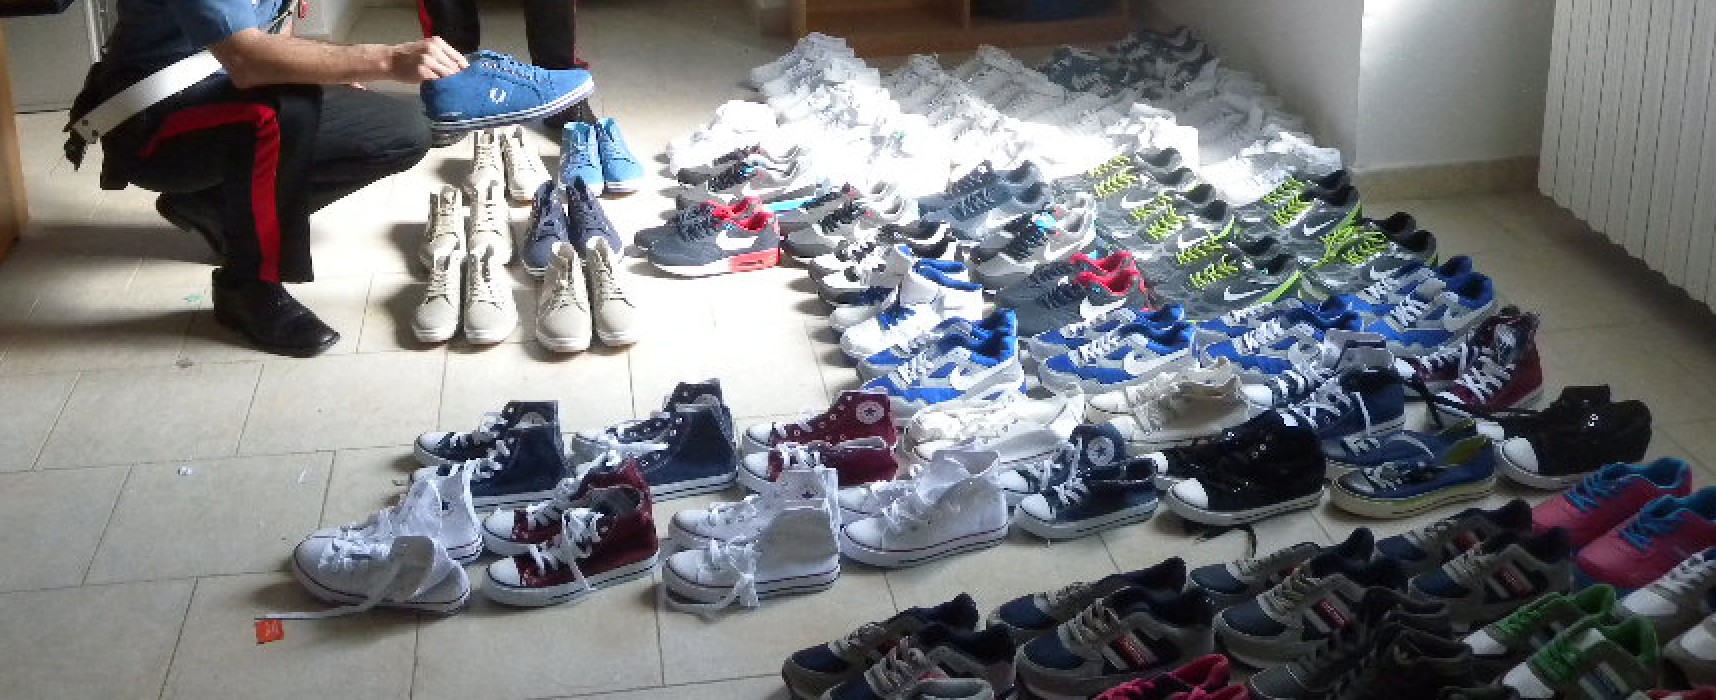 Controlli anticontraffazione dei Carabinieri al mercato, sequestrate 80 paia di scarpe